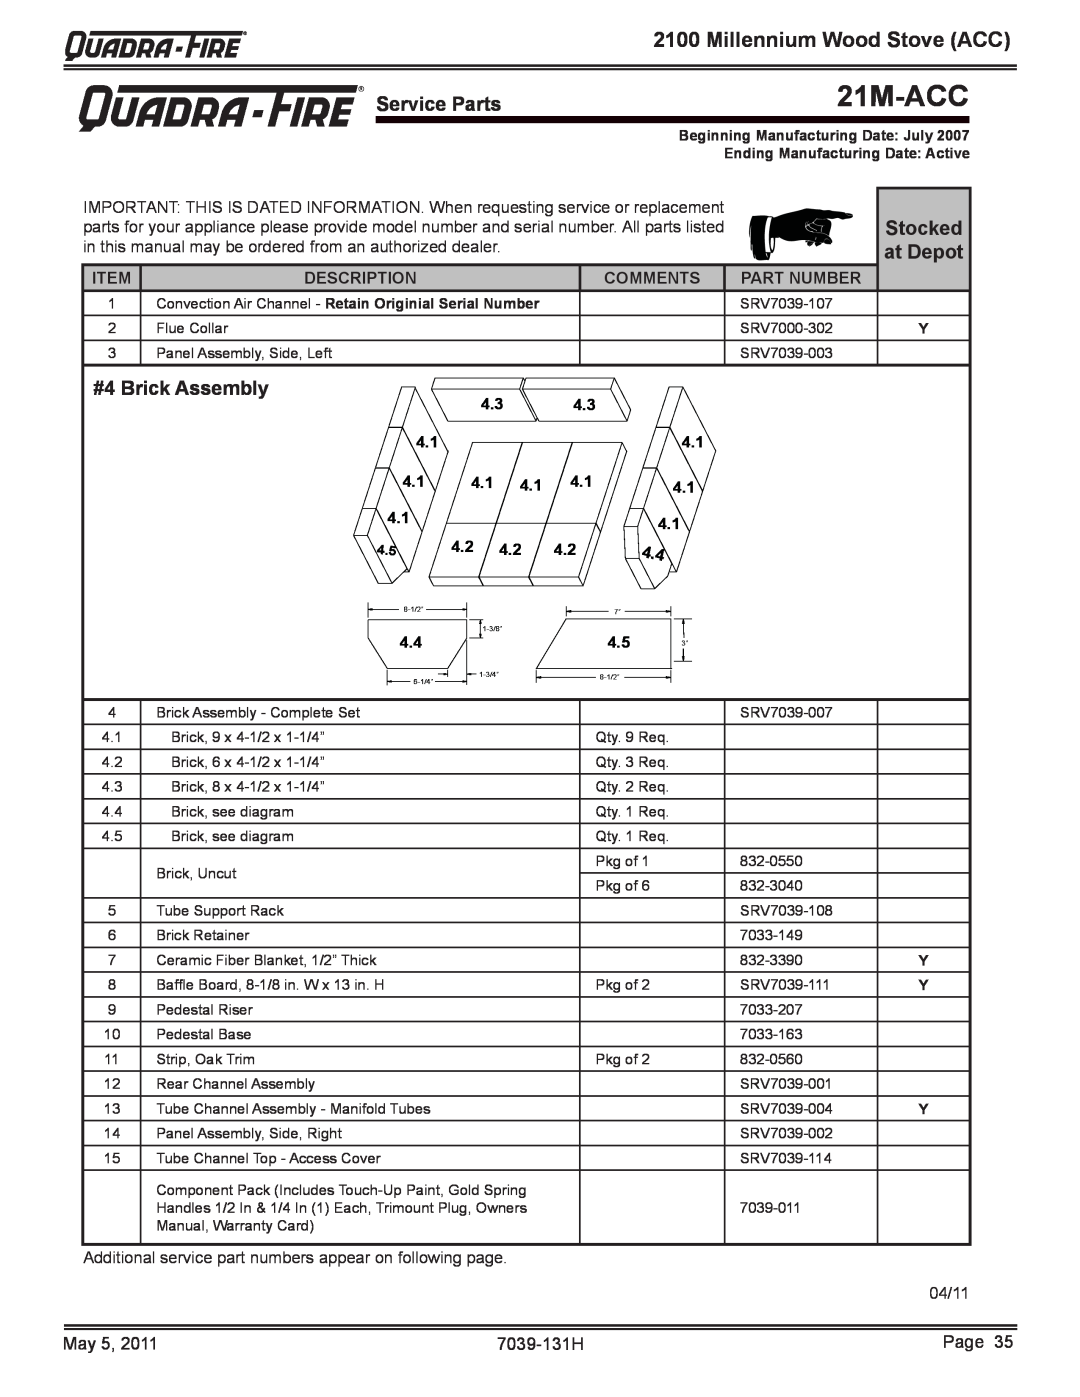 Quadra-Fire 21M-ACC owner manual #4 Brick Assembly, Millennium Wood Stove ACC, Description, Comments, Part Number, 4.1 